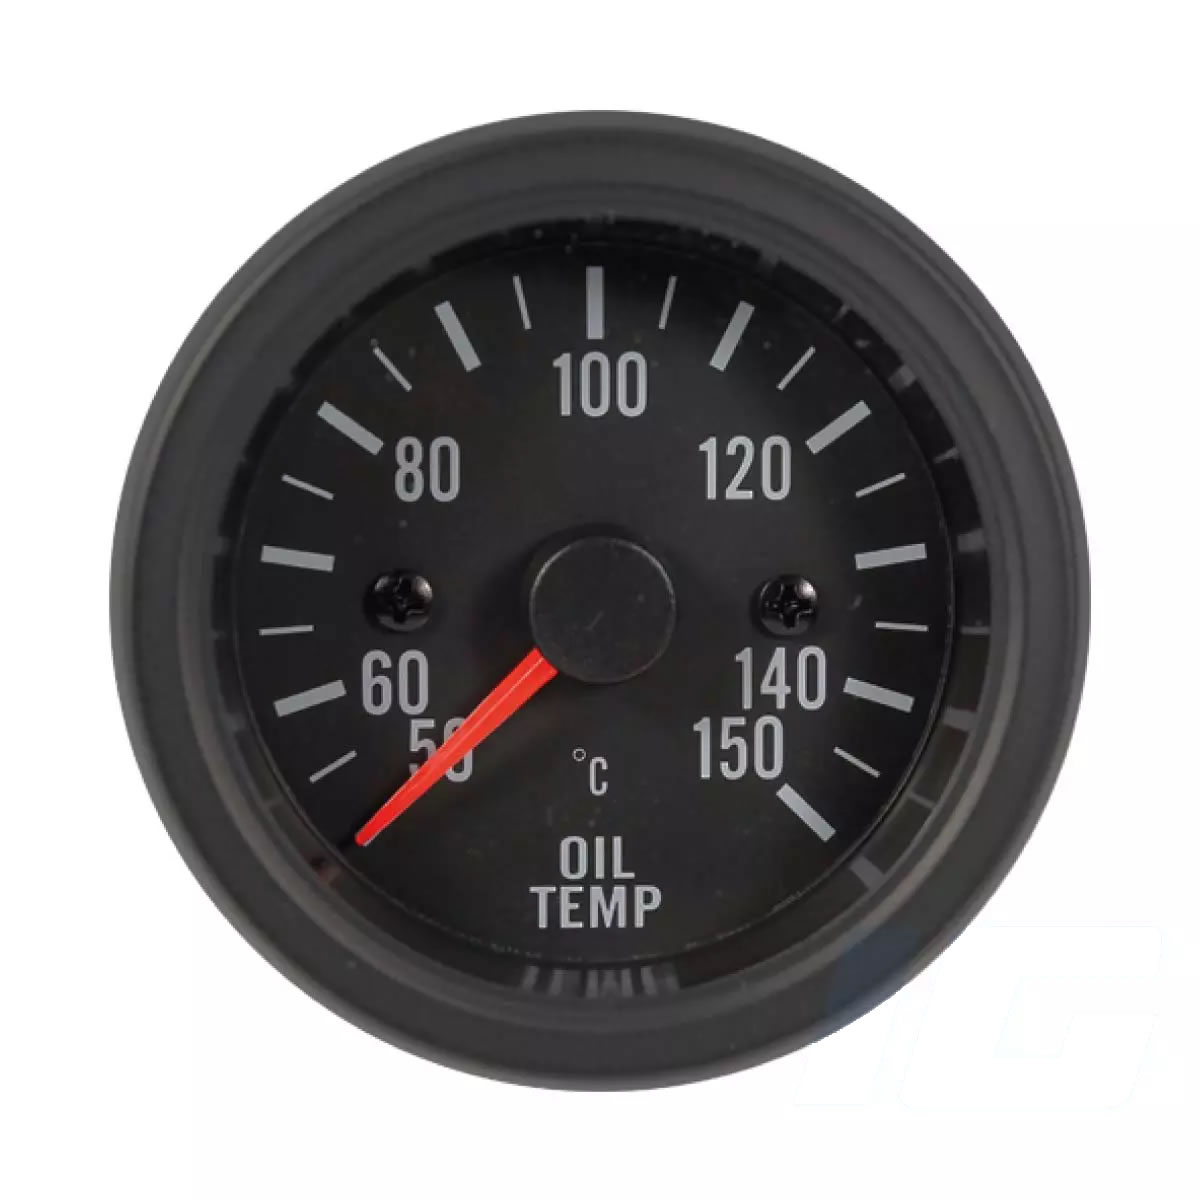 Oil temperature gauges